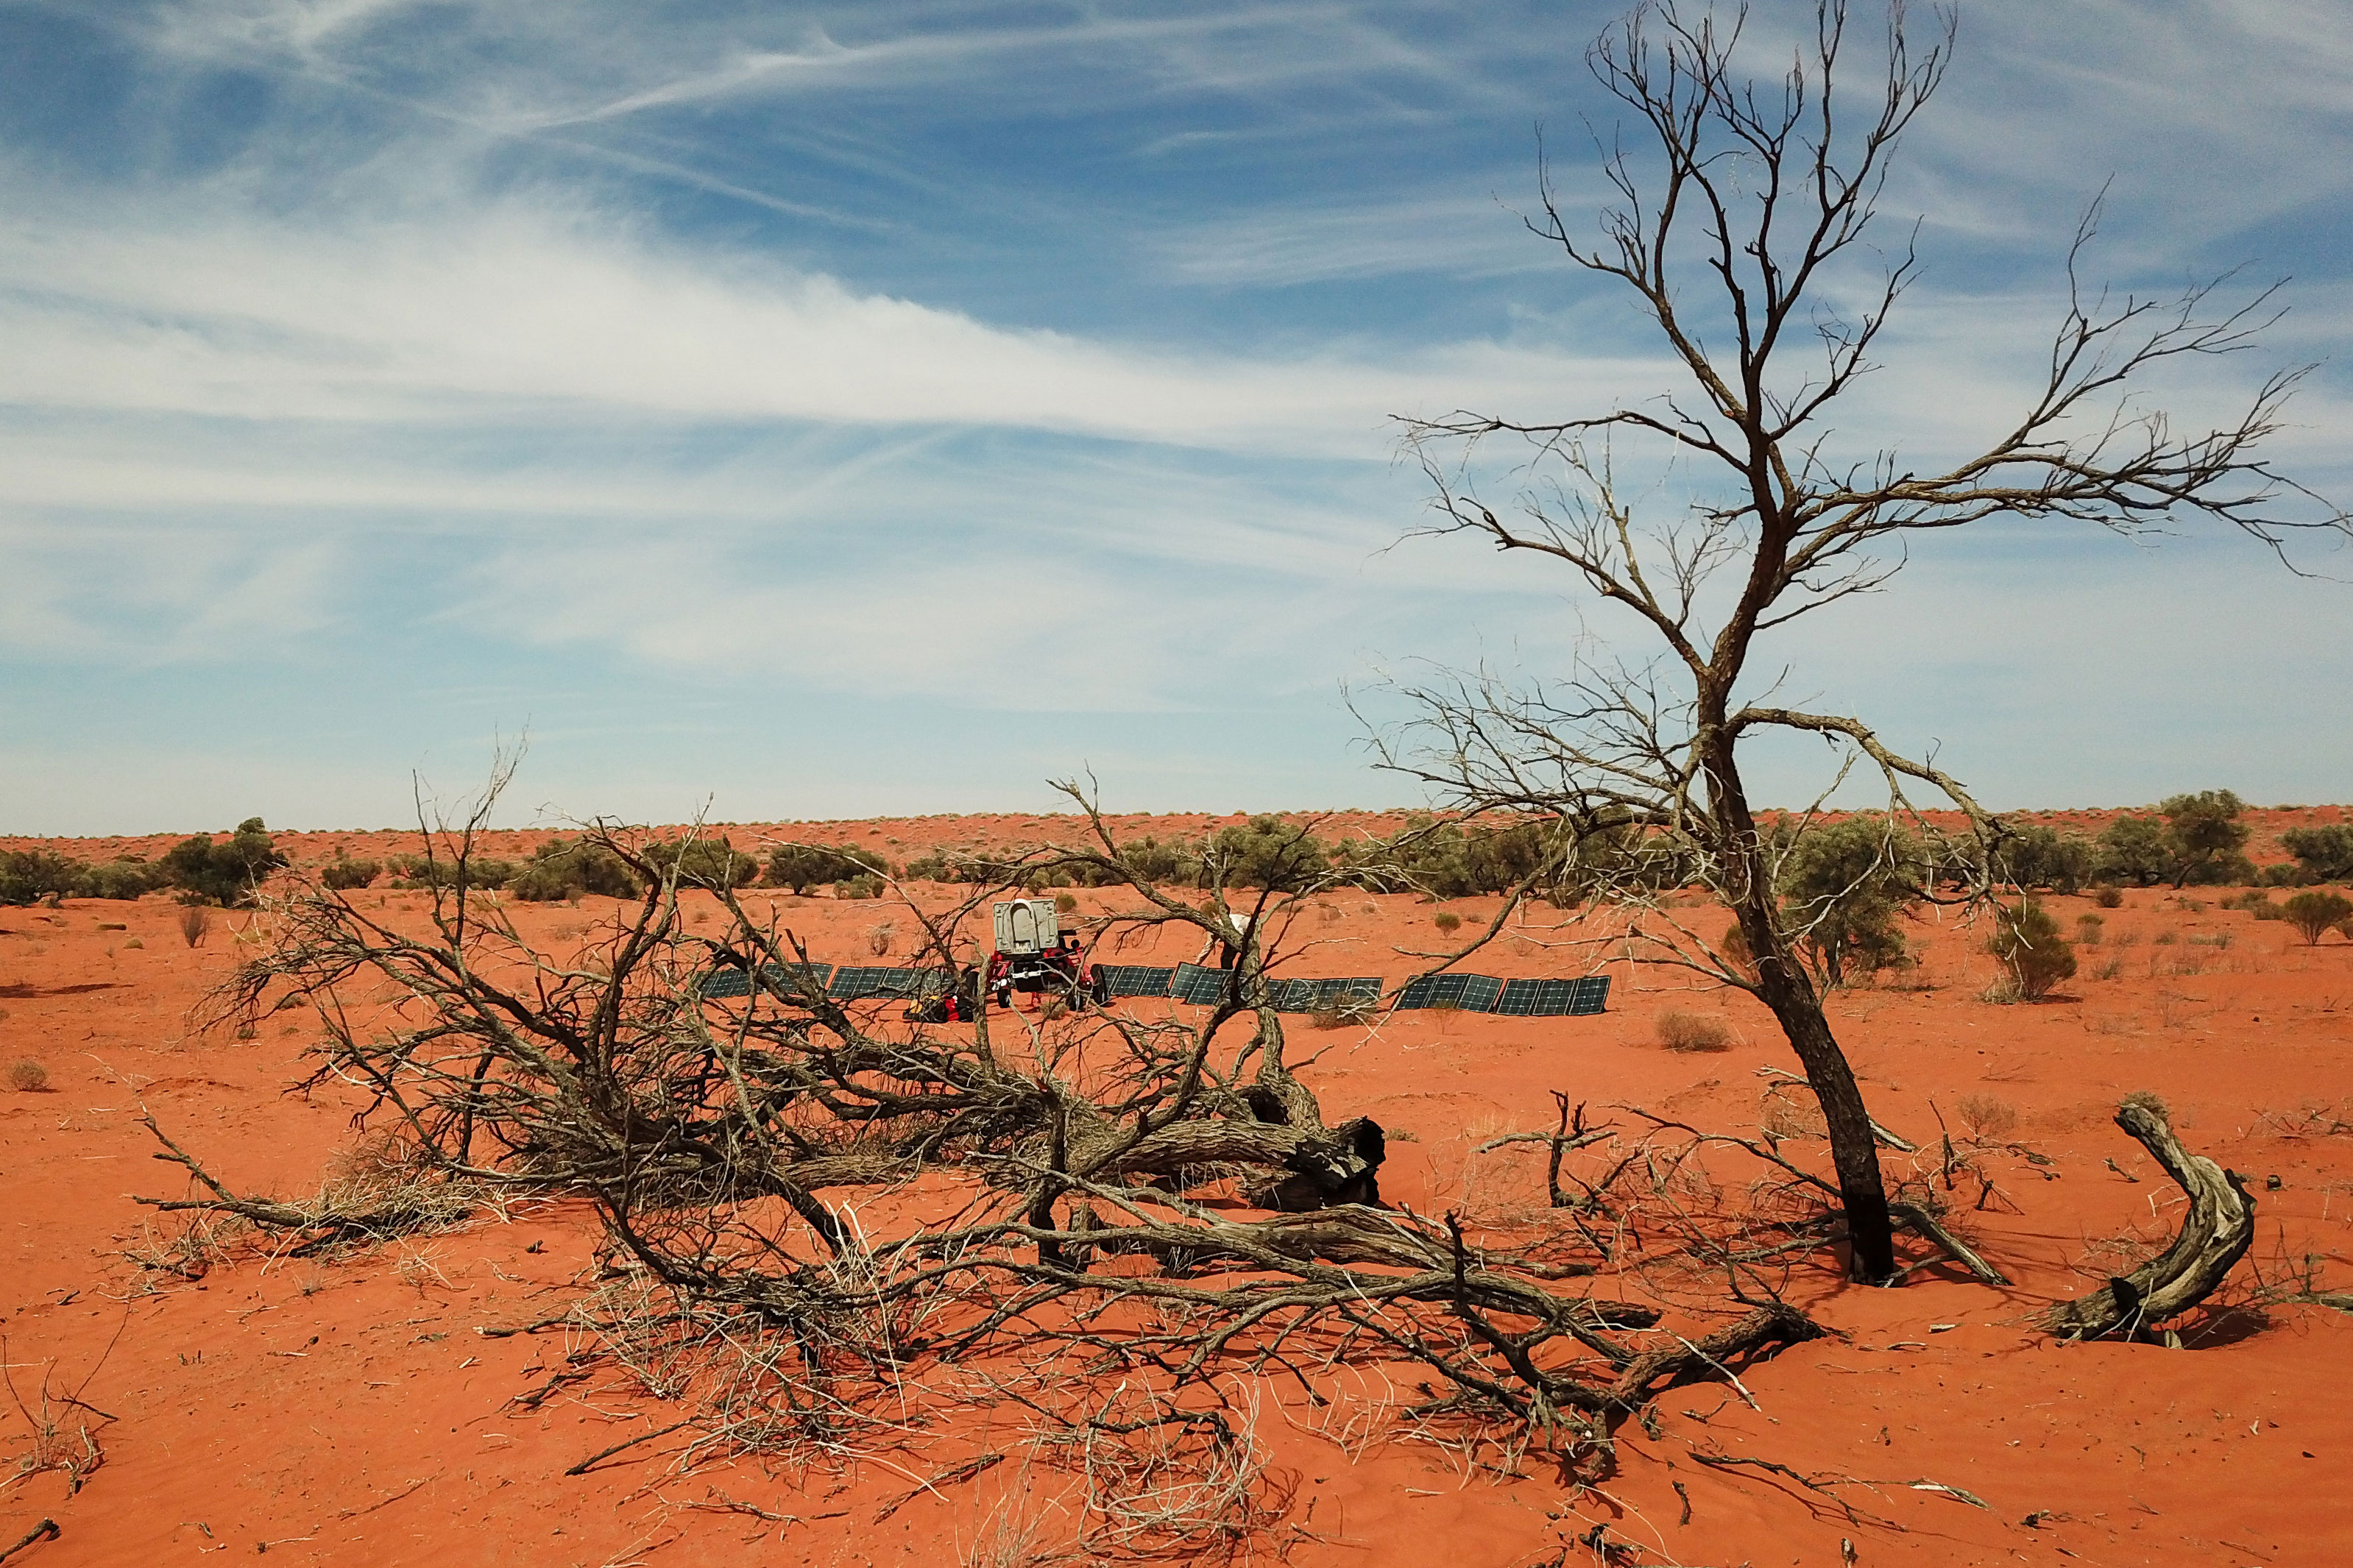 Disparitions dans l'Outback australien: un corps retrouvé deux semaines après